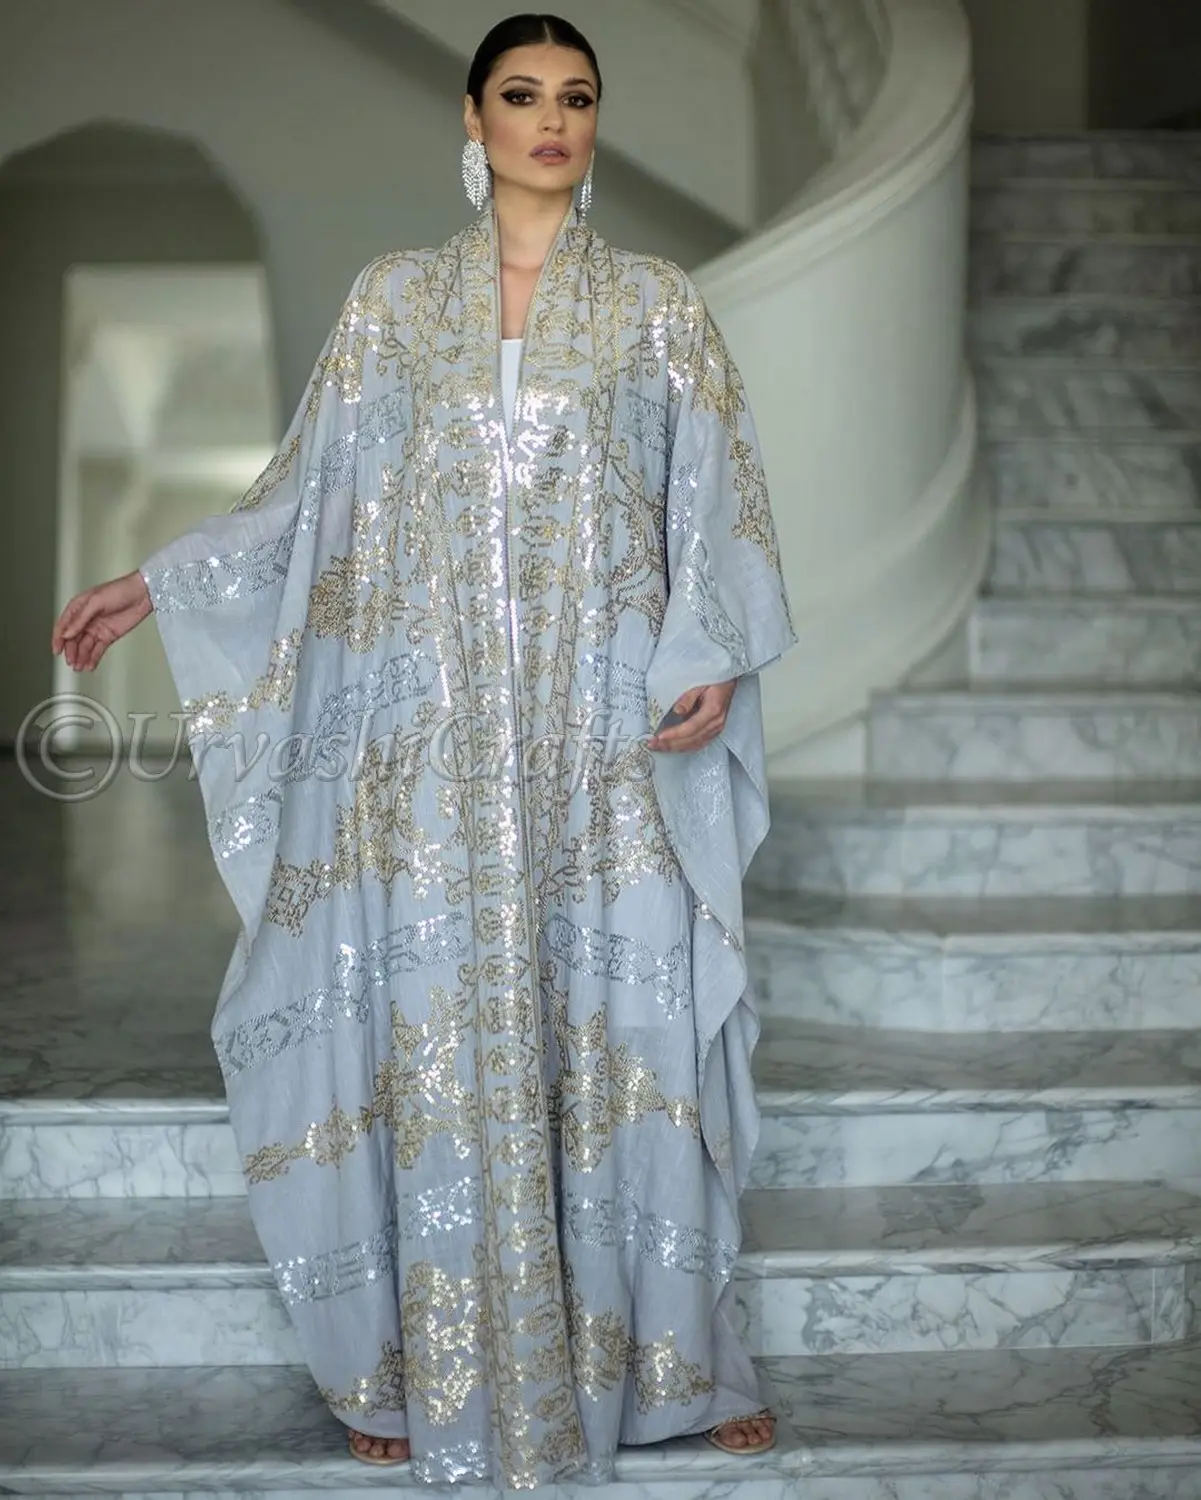 Medio oriente all'ingrosso di alta qualità di lusso caftano lucido sequenza donne abbigliamento islamico di grandi dimensioni abito da sposa caftano Dubai